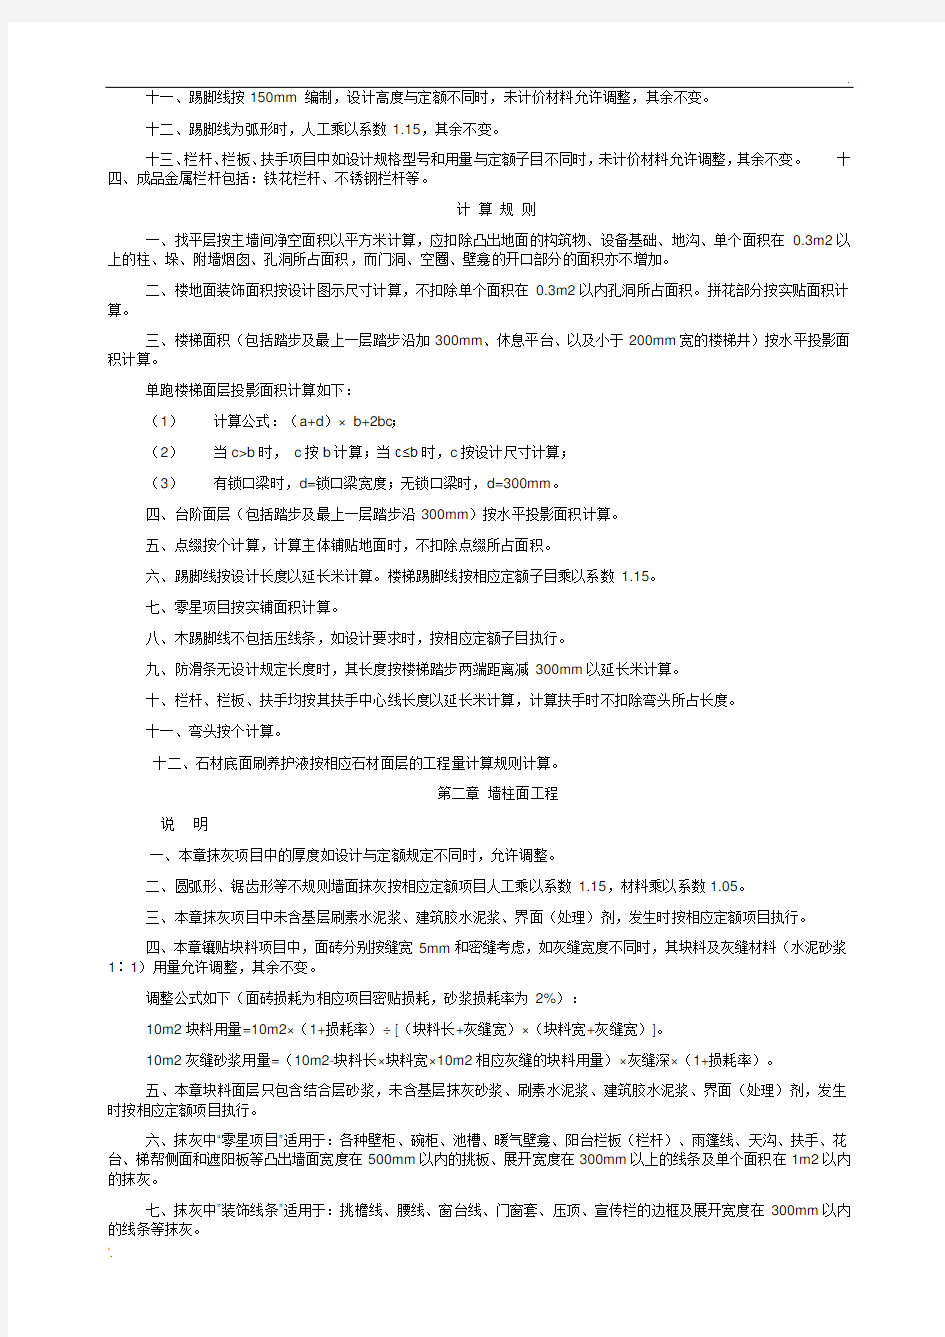 重庆市2008装饰工程定额说明和计算规则